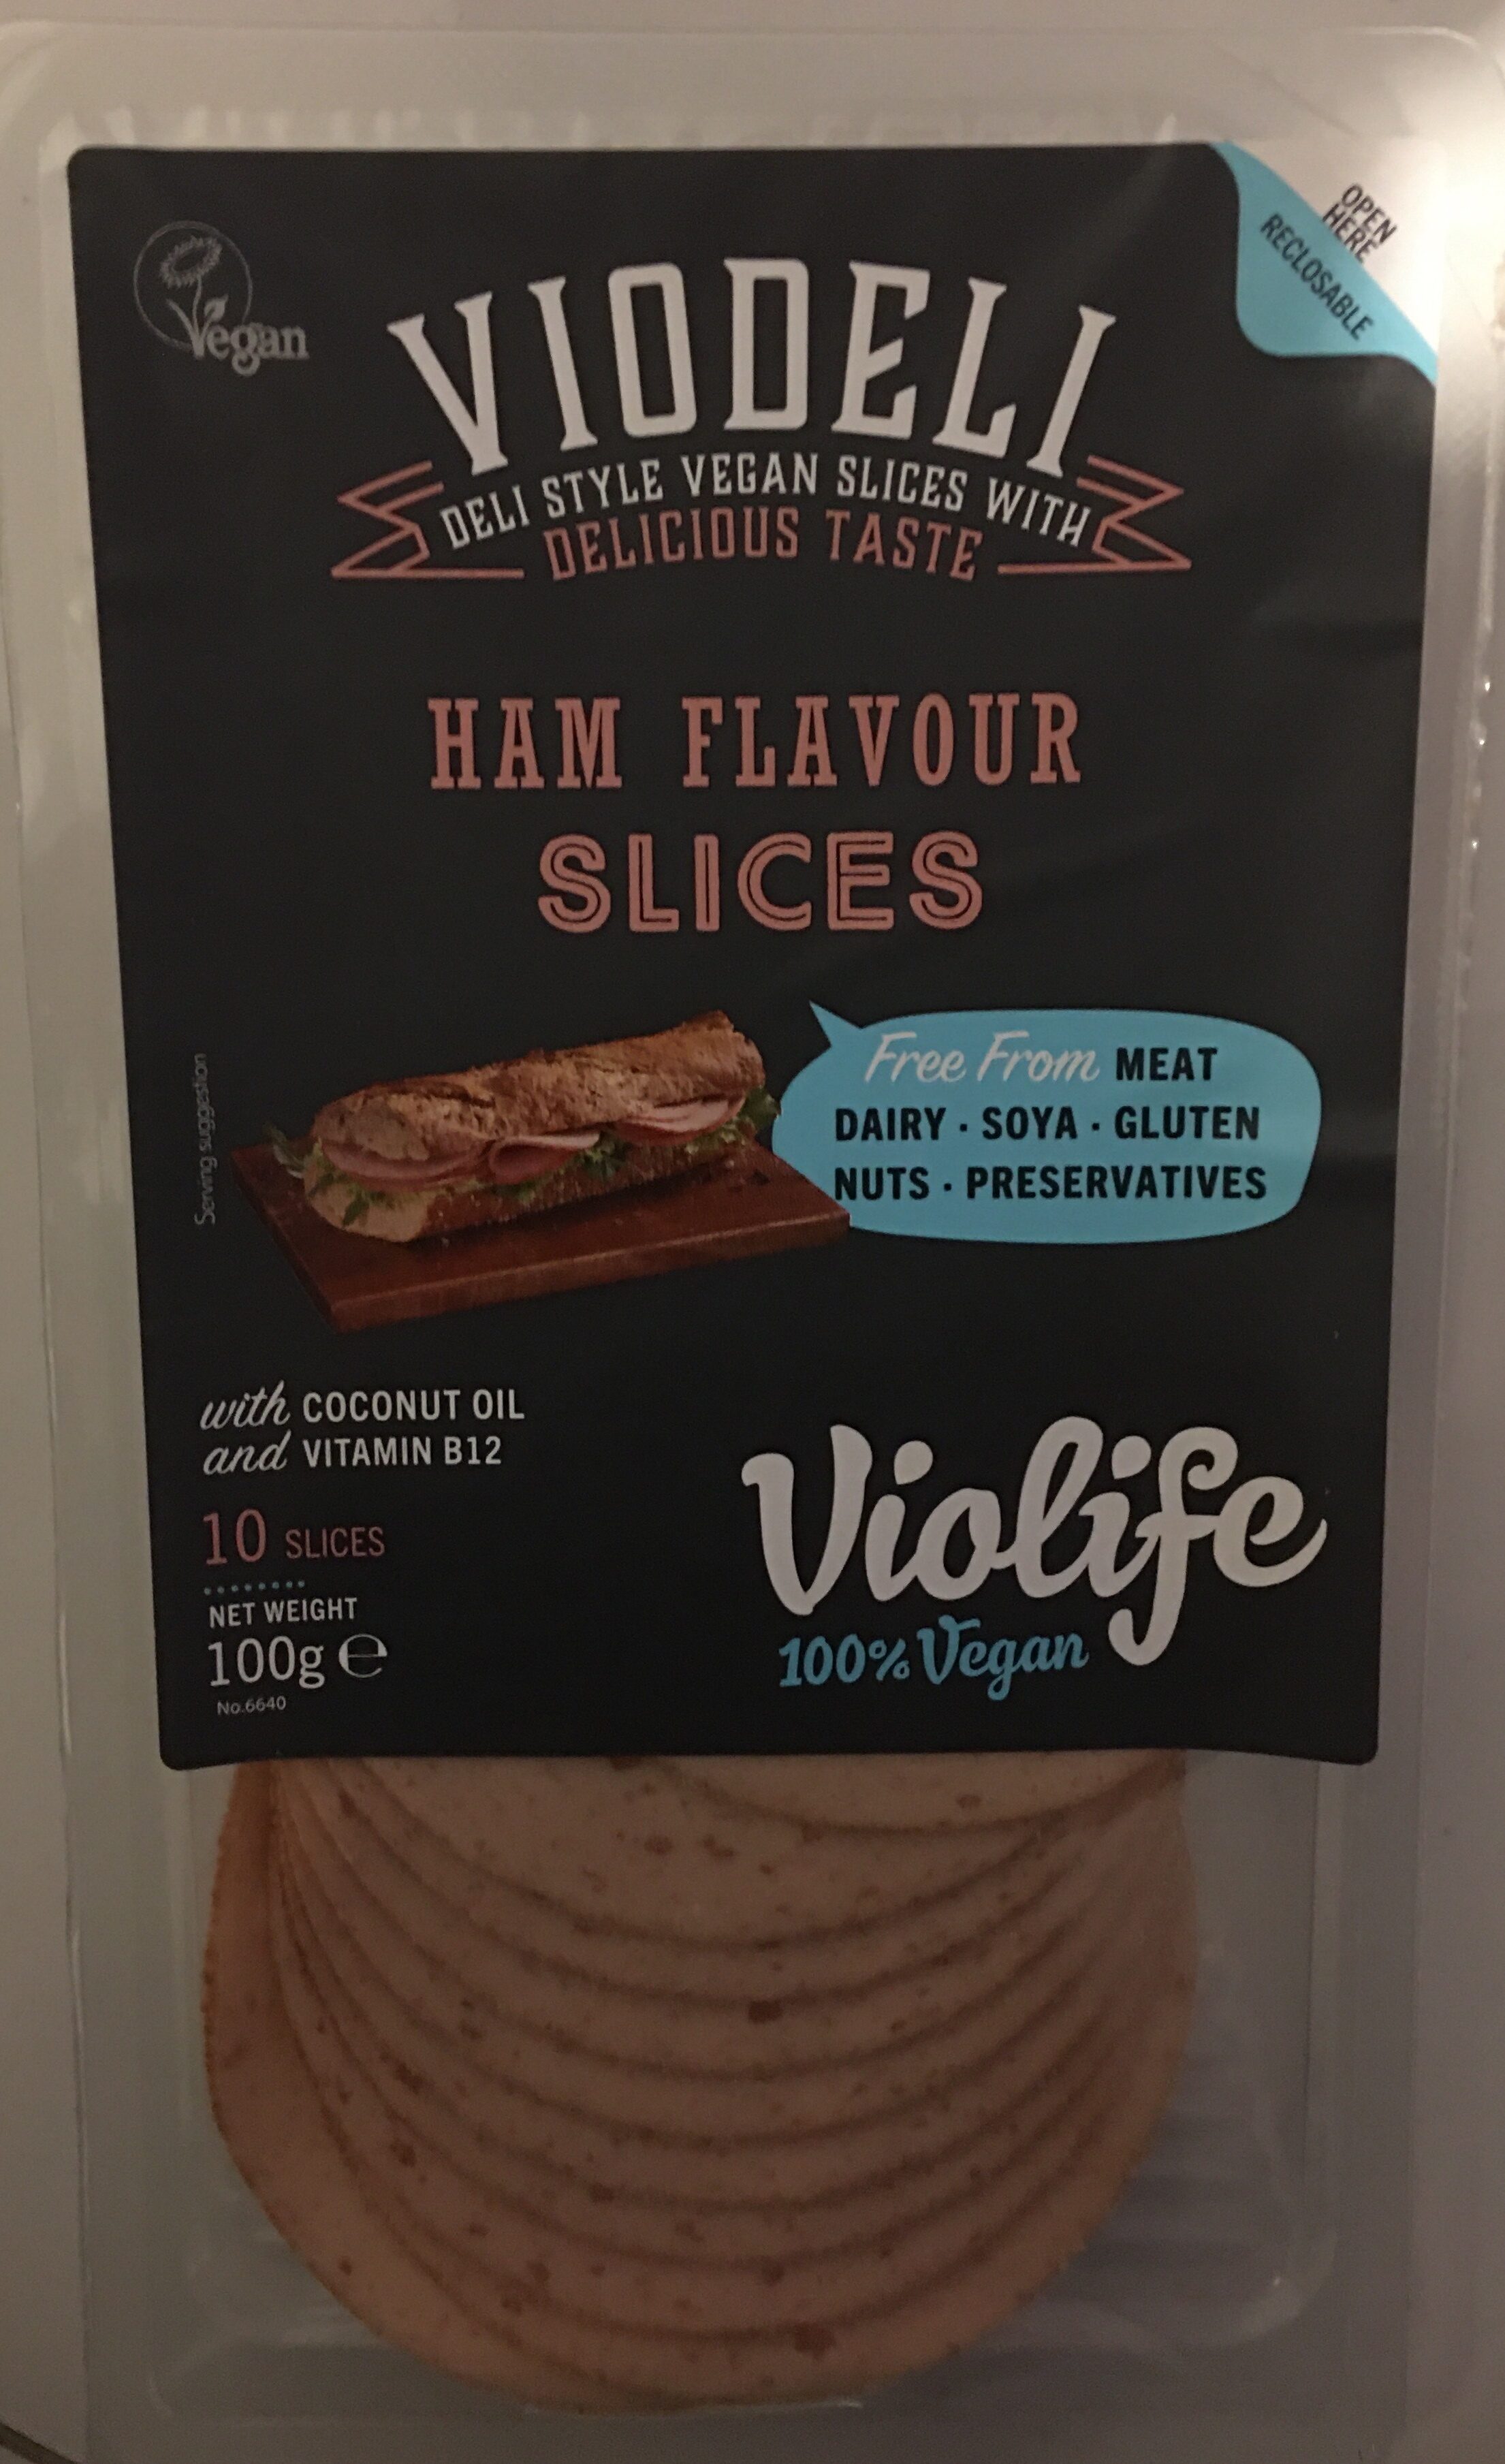 Ham flavour slices - Product - en